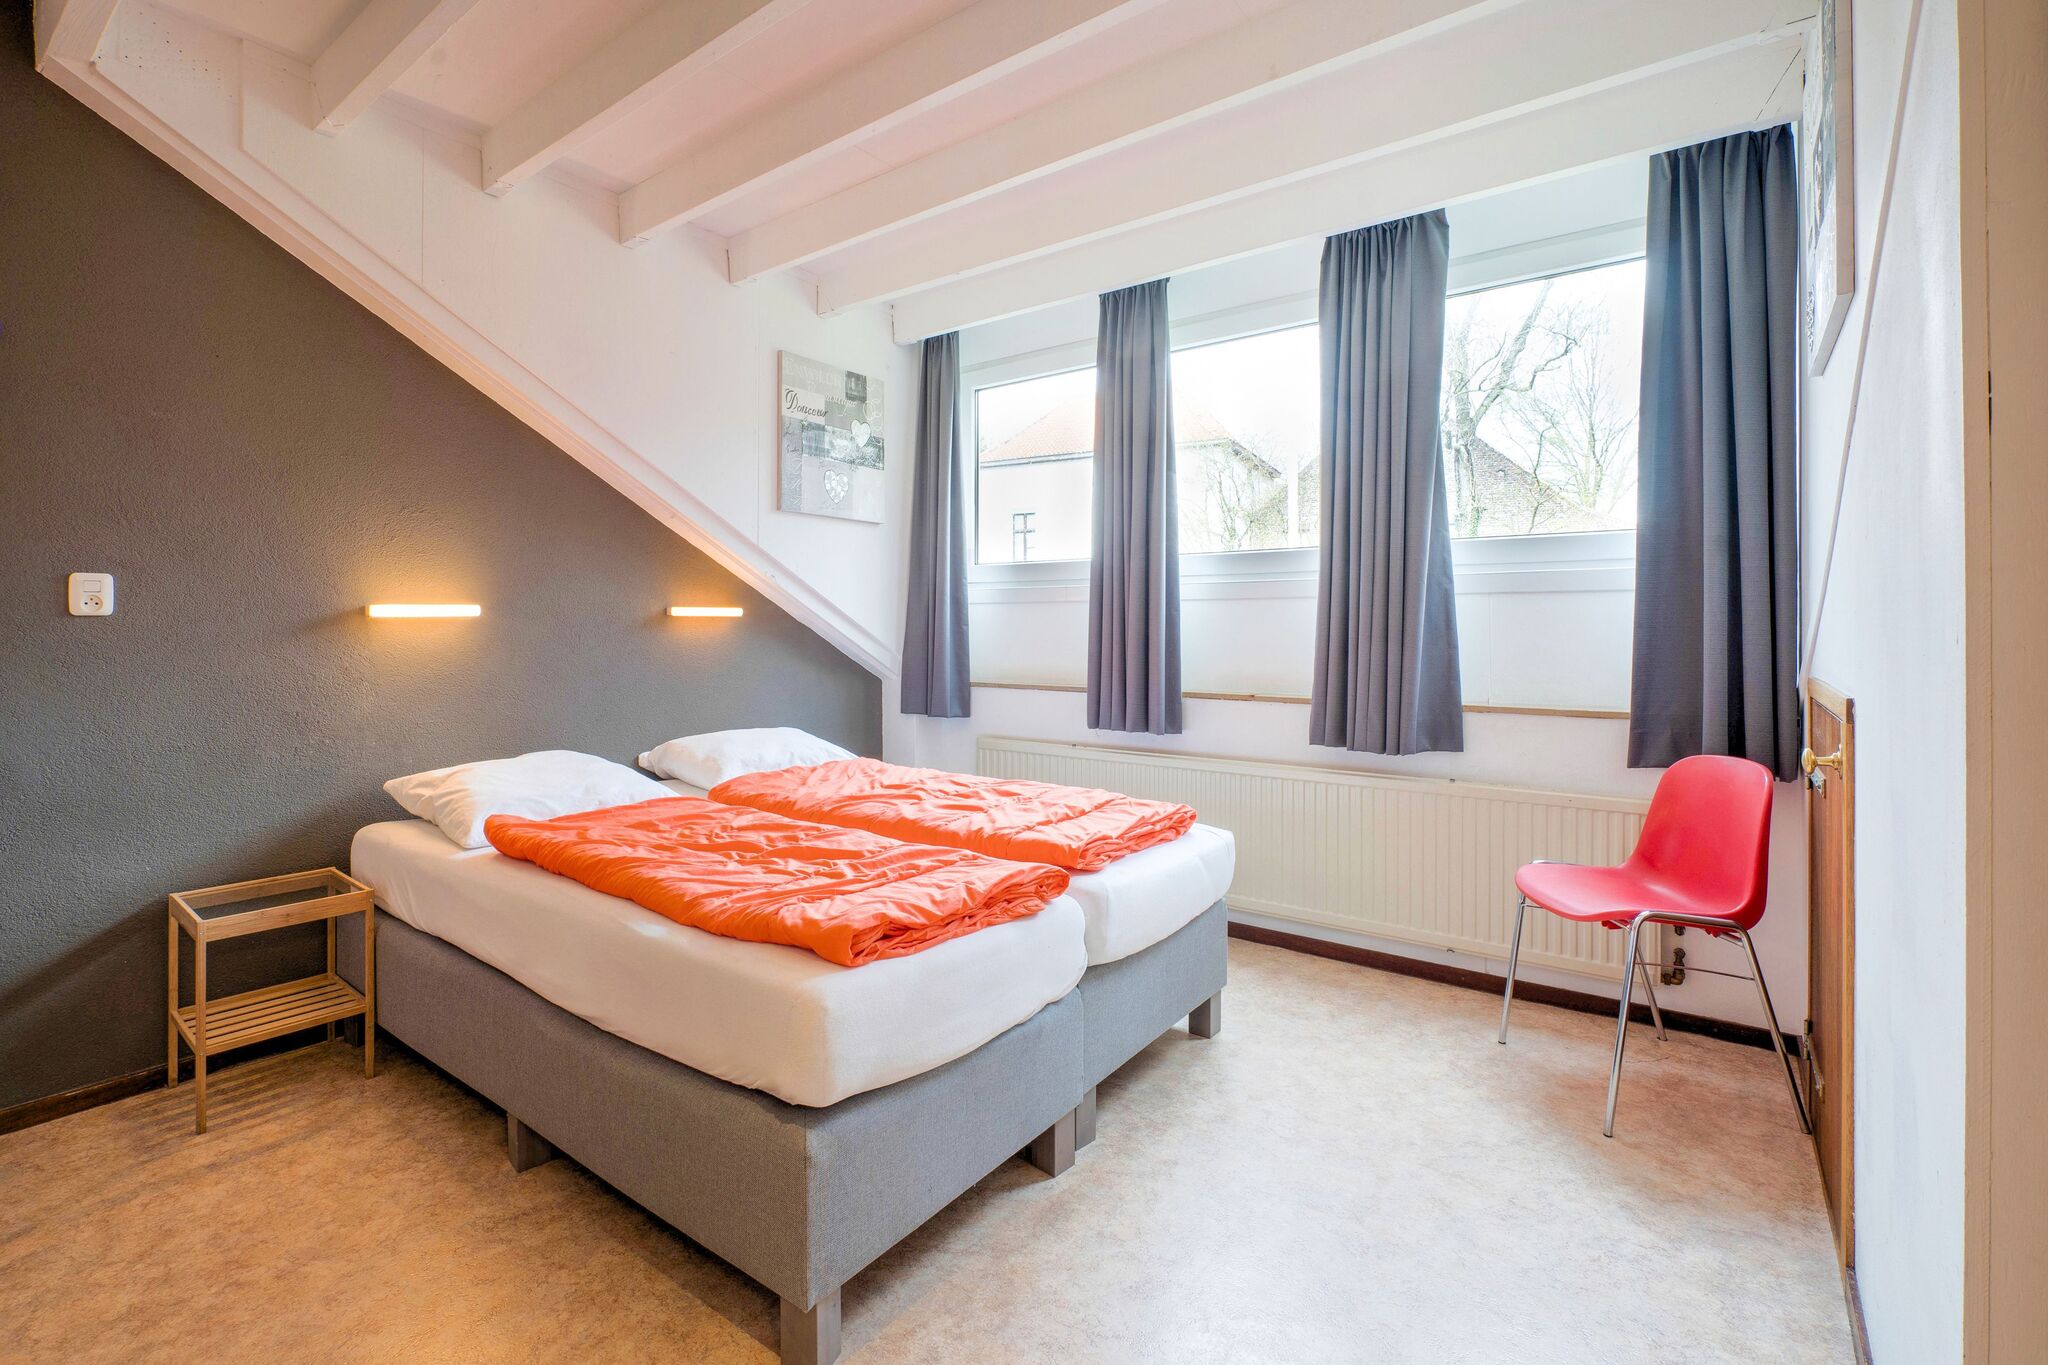 Heerlijk vakantiehuis in Ulestraten met privé terras en groot speelbos